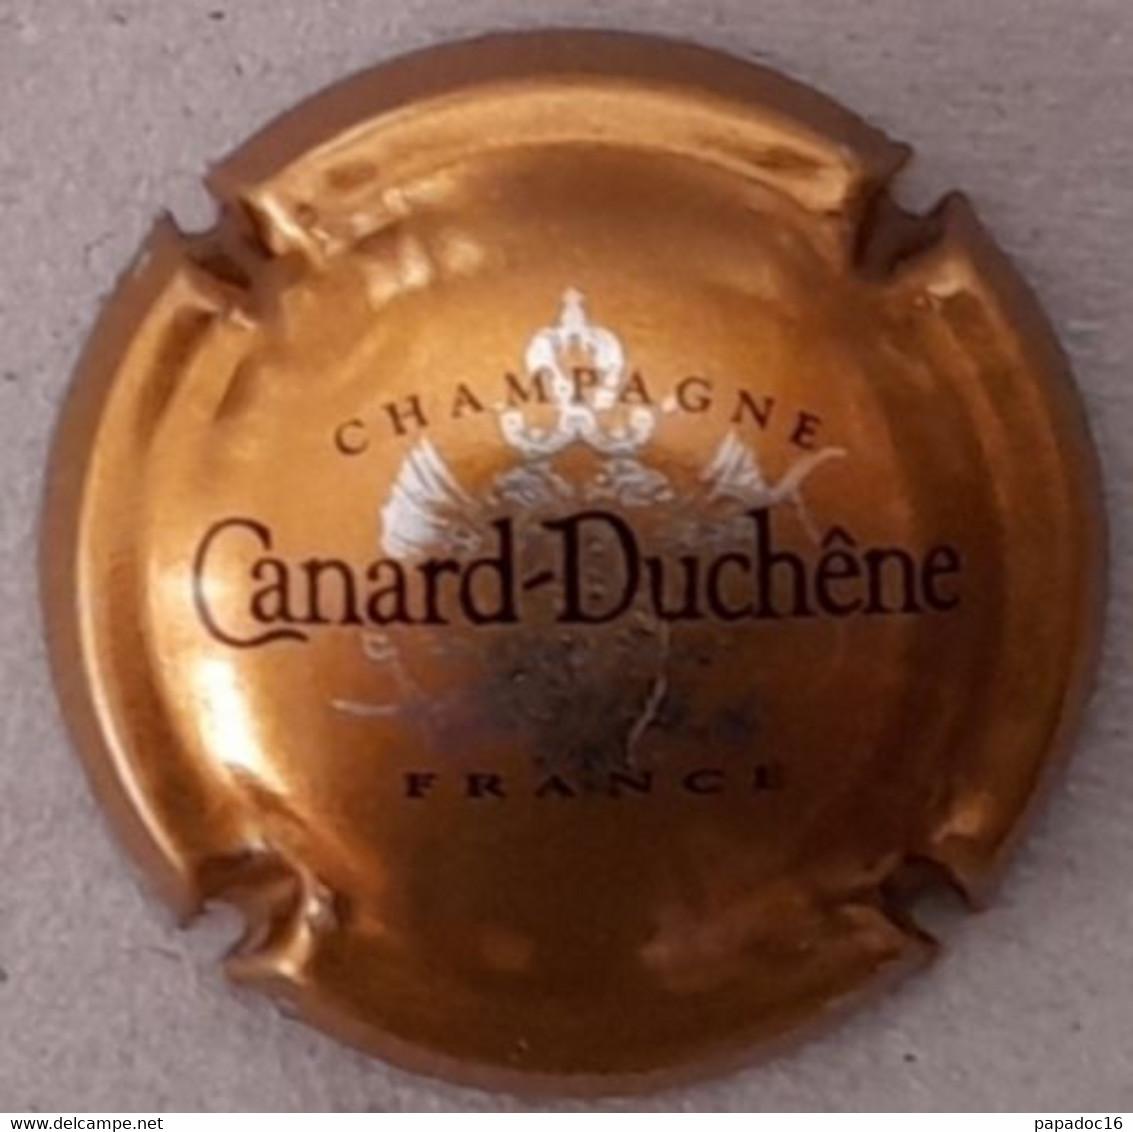 Plaque - Capsule De Muselet - Champagne Canard-Duchêne - Blanc Et Marron Sur Or - Canard Duchêne